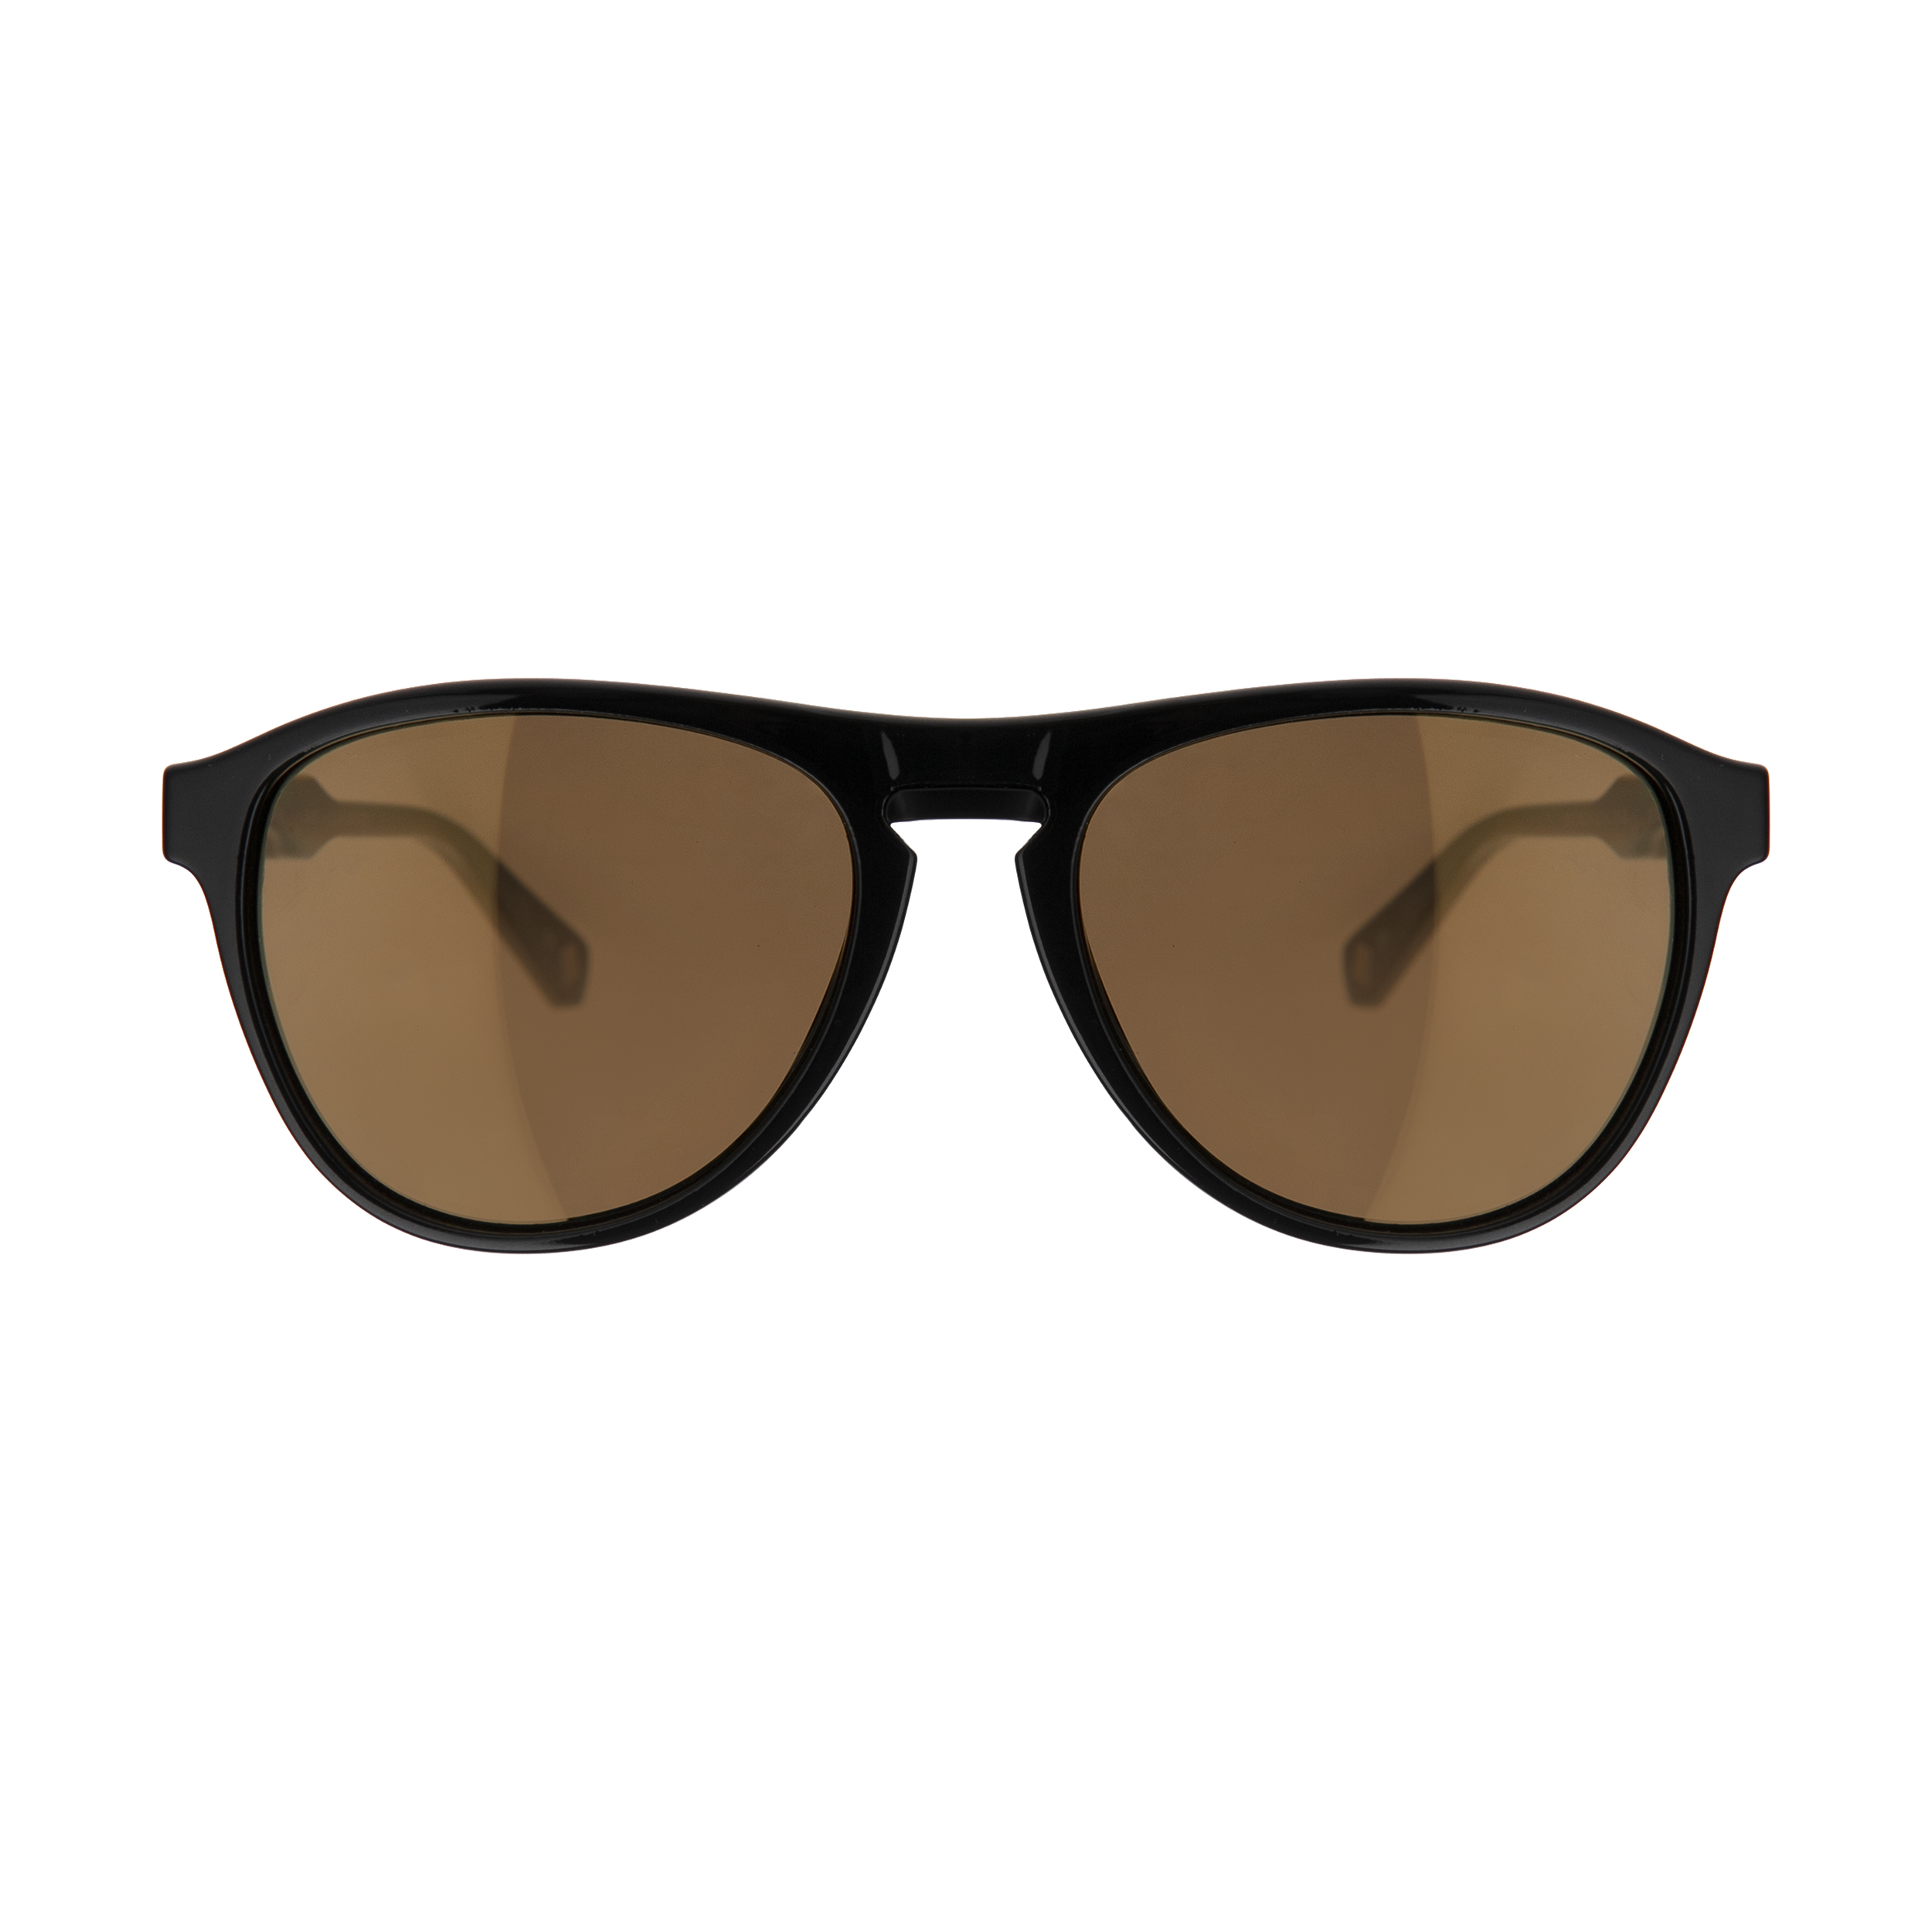 عینک آفتابی مردانه تد بیکر مدل TB 1454 001 -  - 1